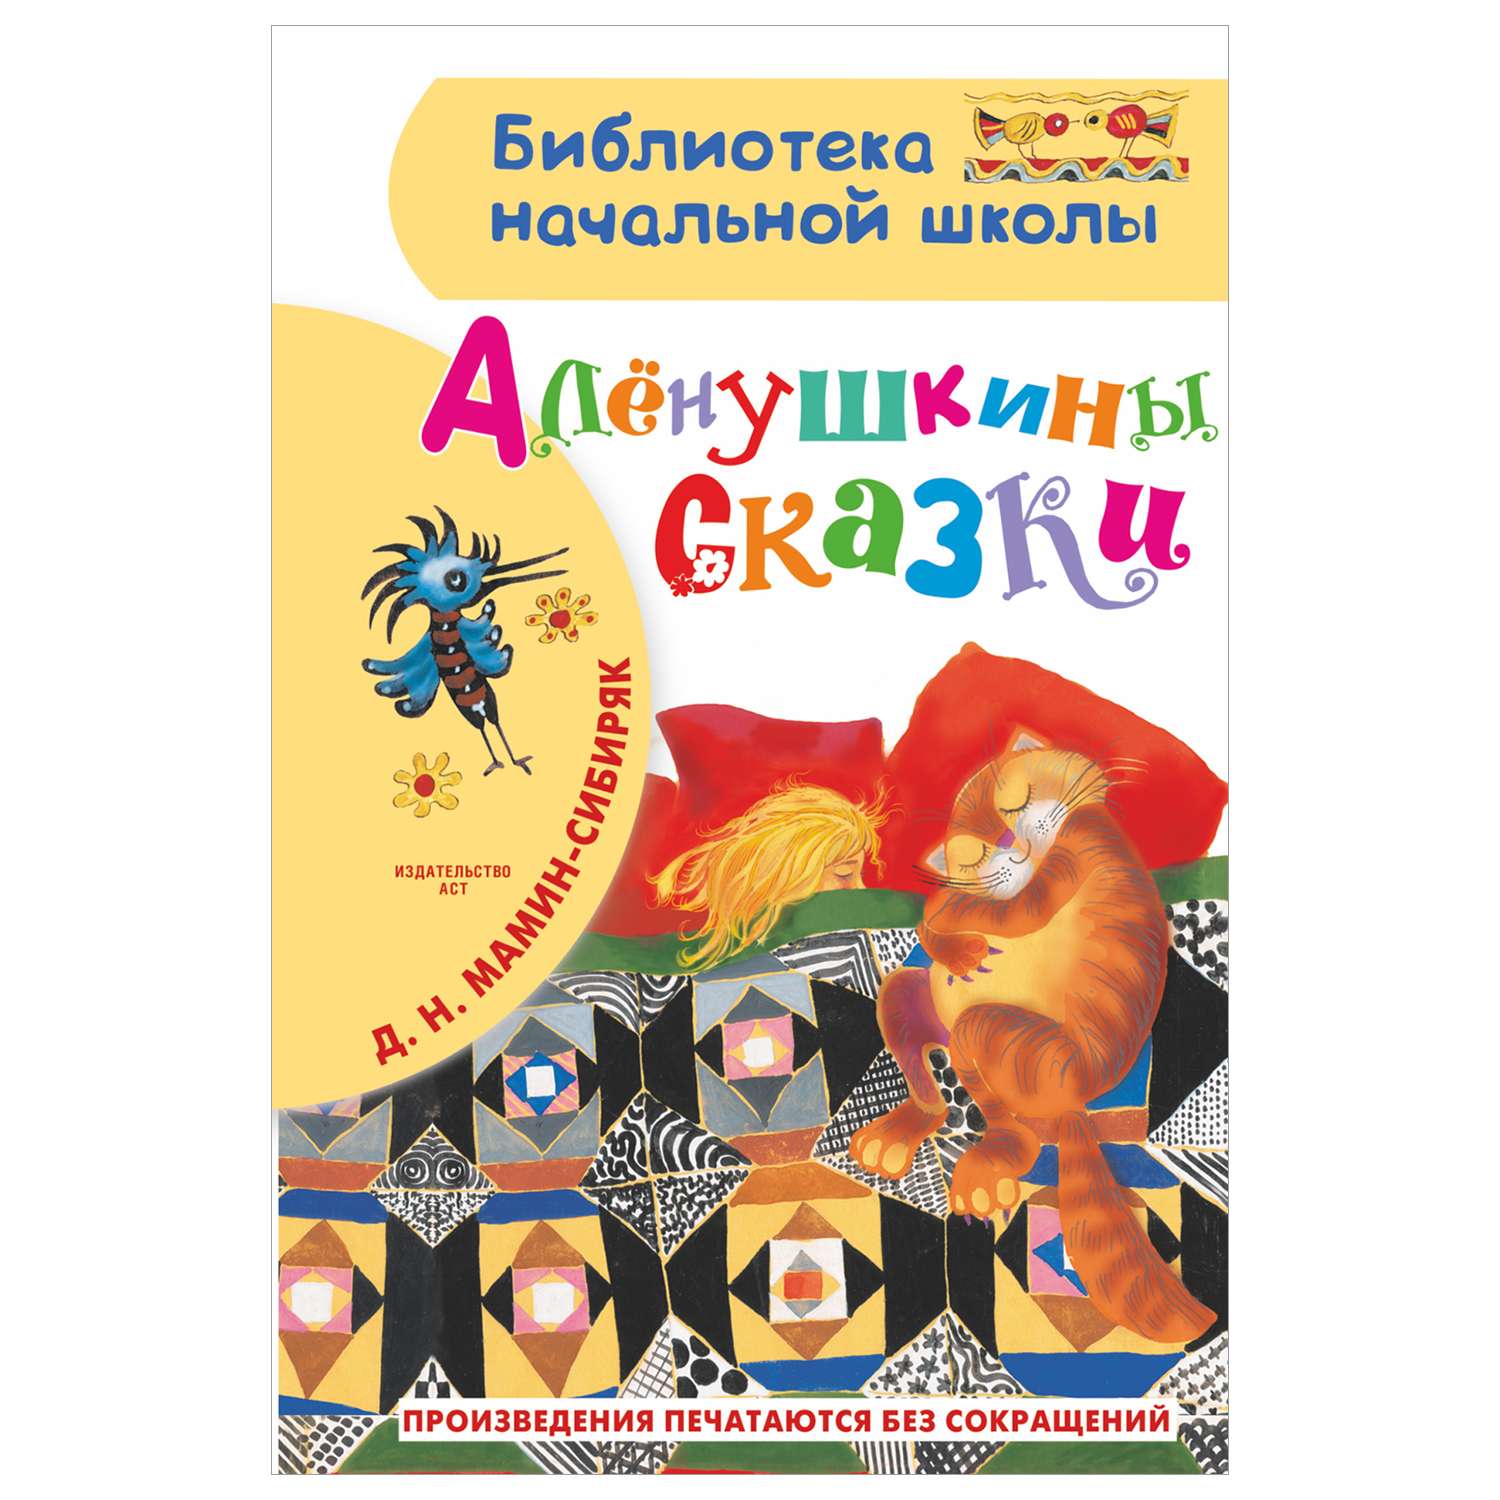 Книга Библиотека начальной школы Алёнушкины сказки - фото 1